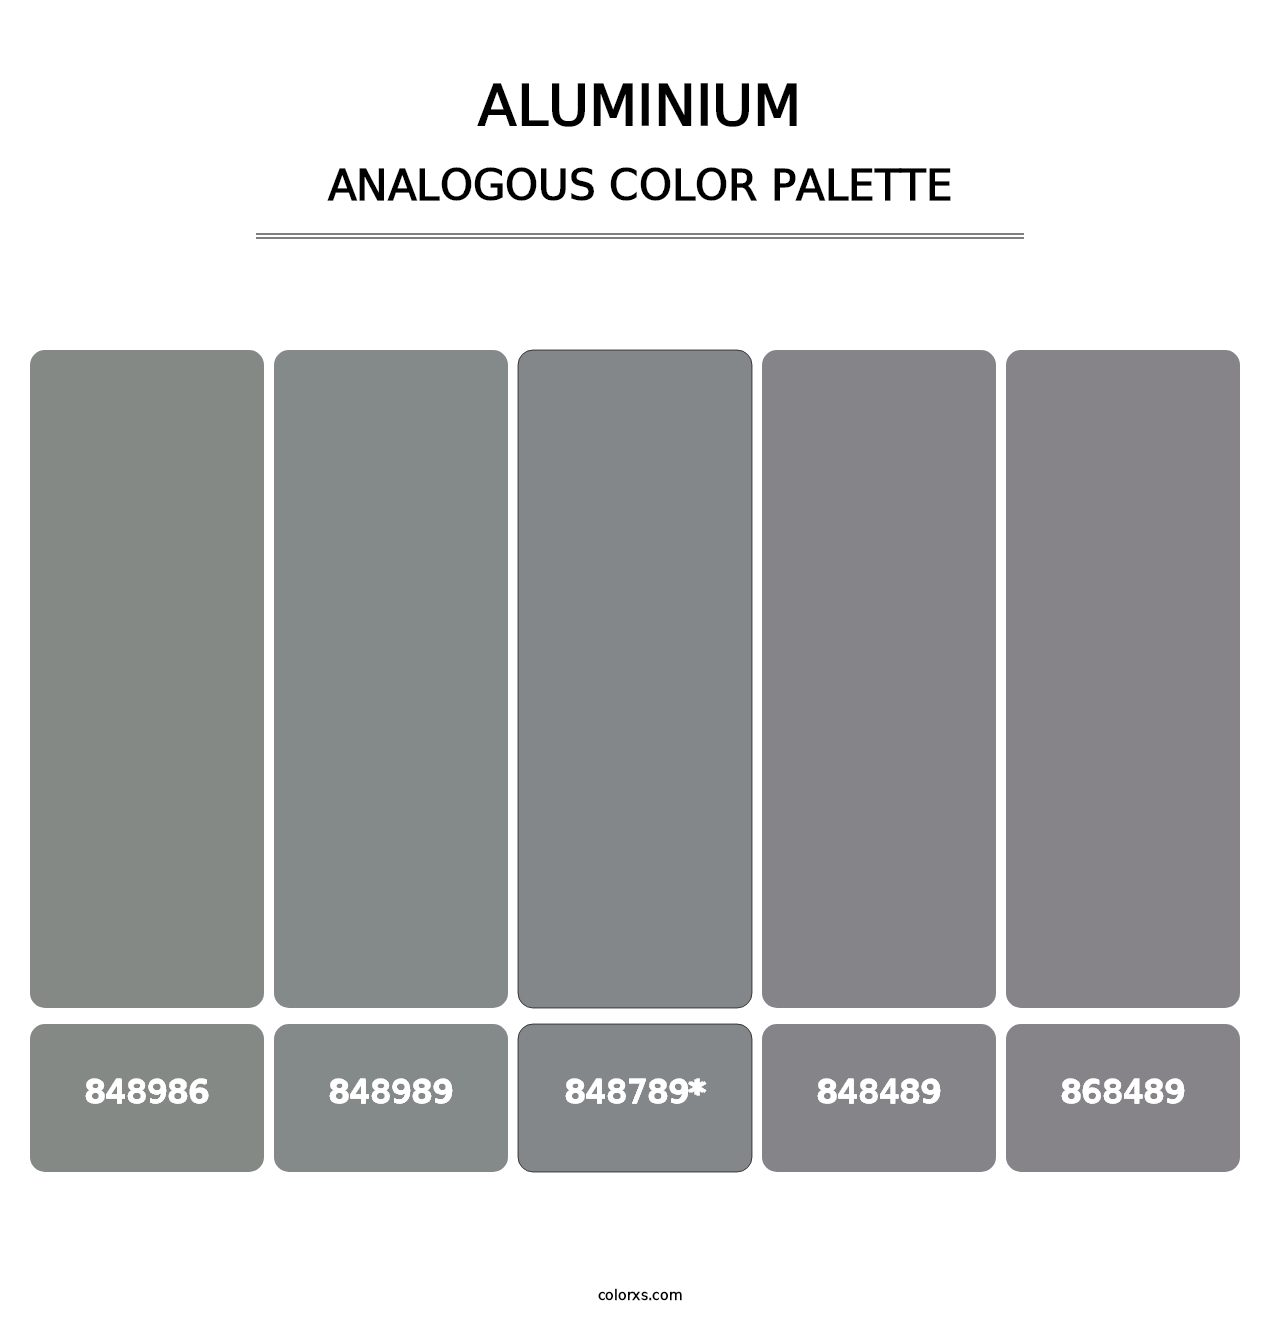 Aluminium - Analogous Color Palette